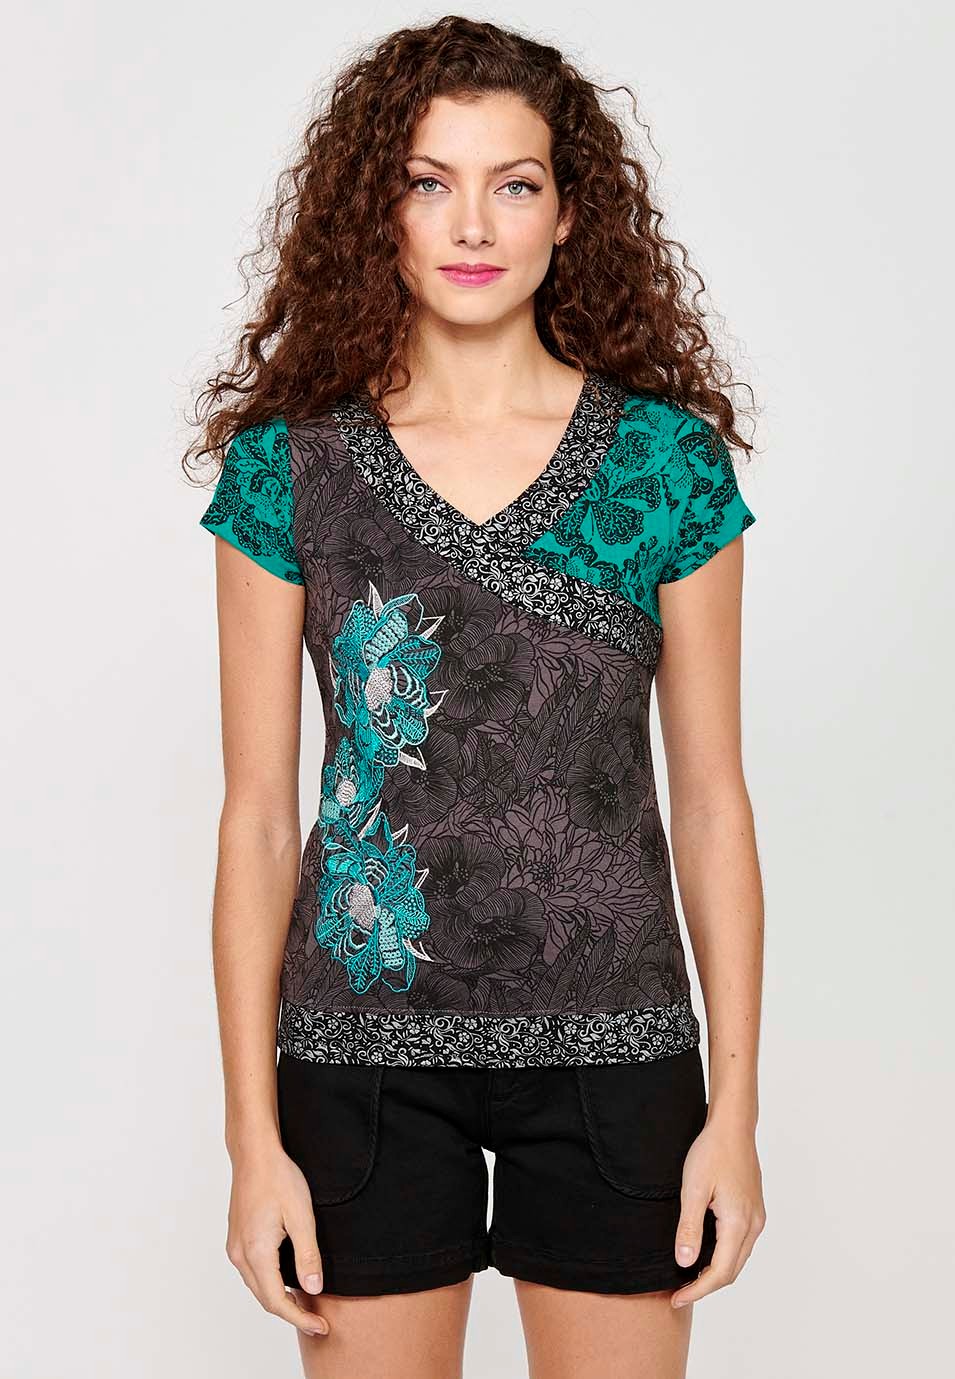 Camiseta de manga corta de Algodón con Cuello pico y Estampado floral de Color Menta para Mujer